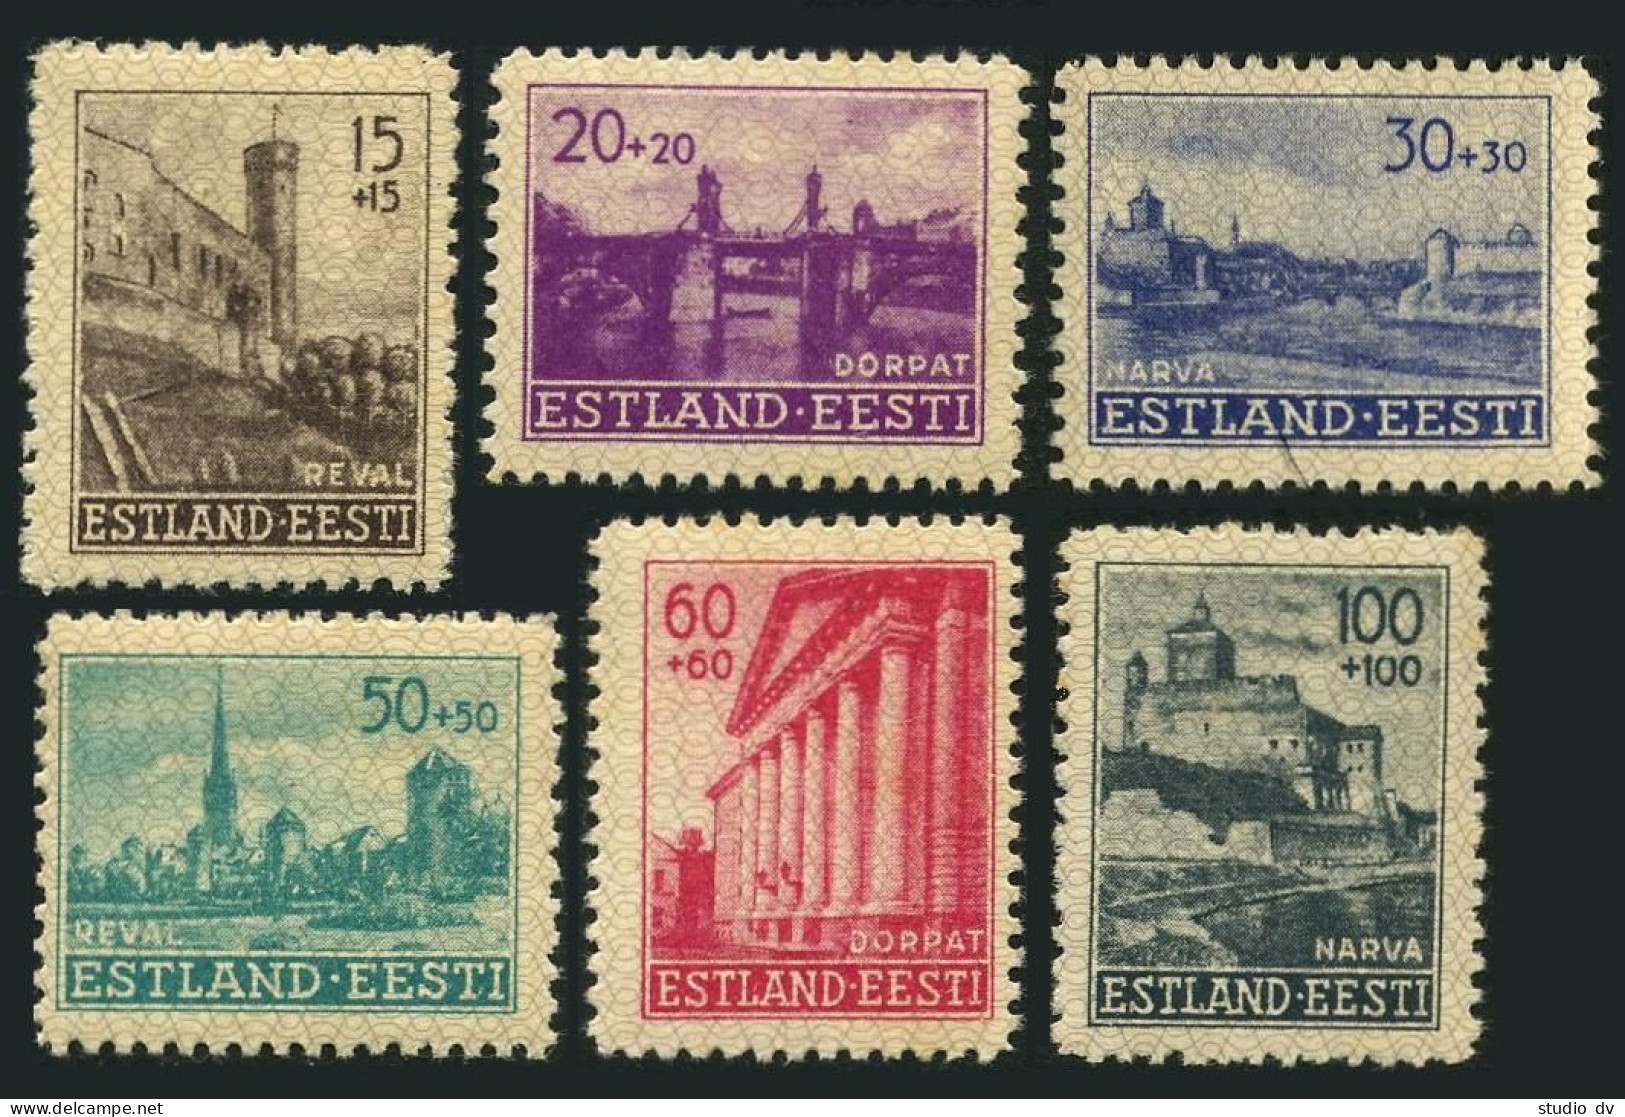 Estonia NB1-NB6,MNH.Michel 4-9. WW II Occupation Stamps,1941.Tallinn,Tartu,Narva - Estland